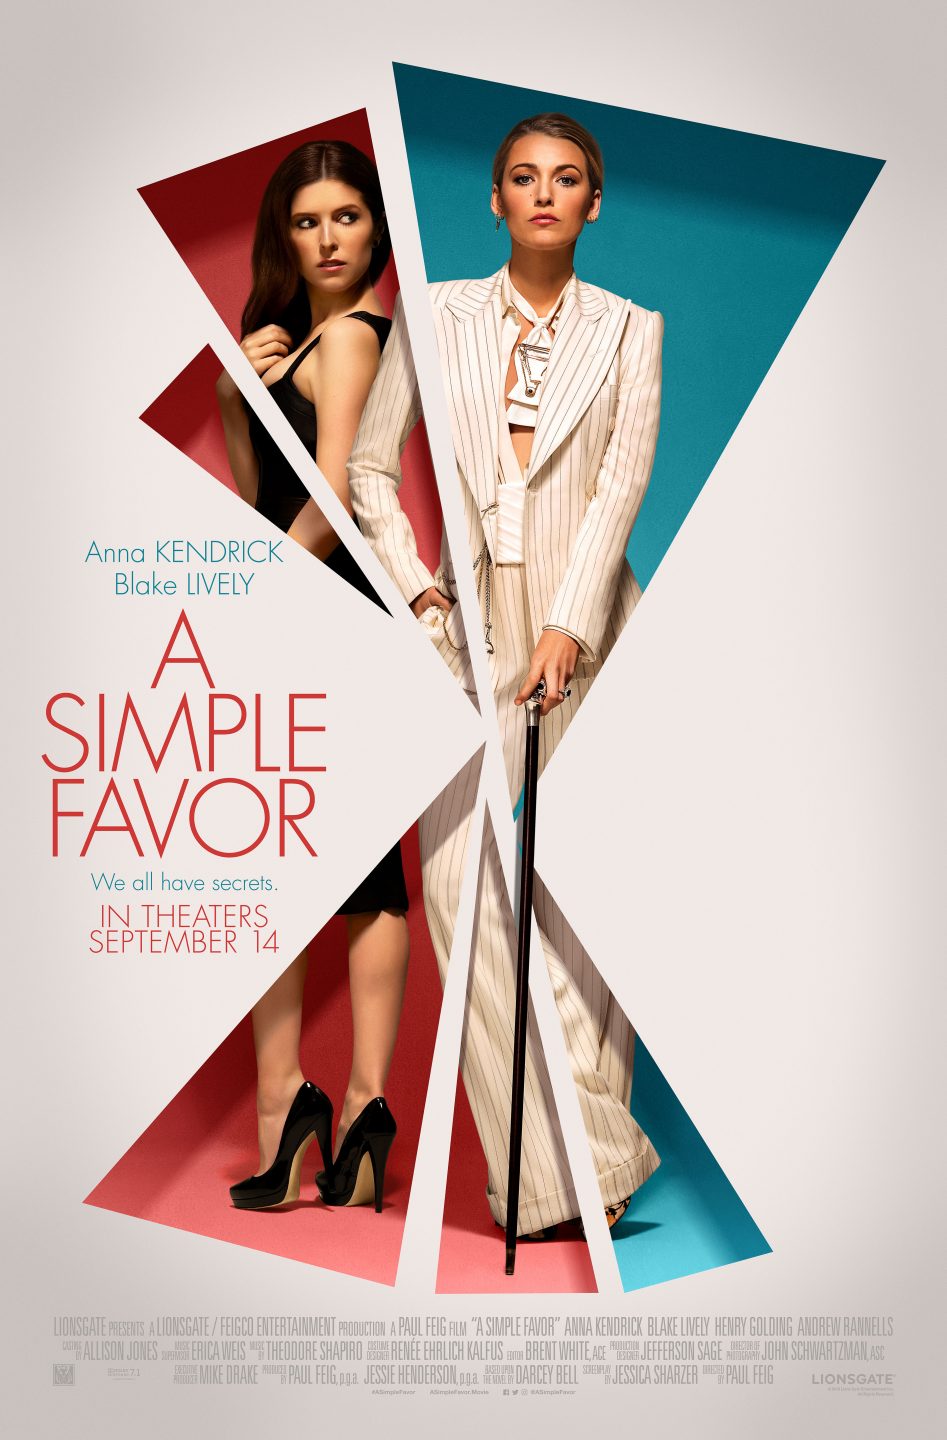 A Simple Favor poster (Lionsgate)